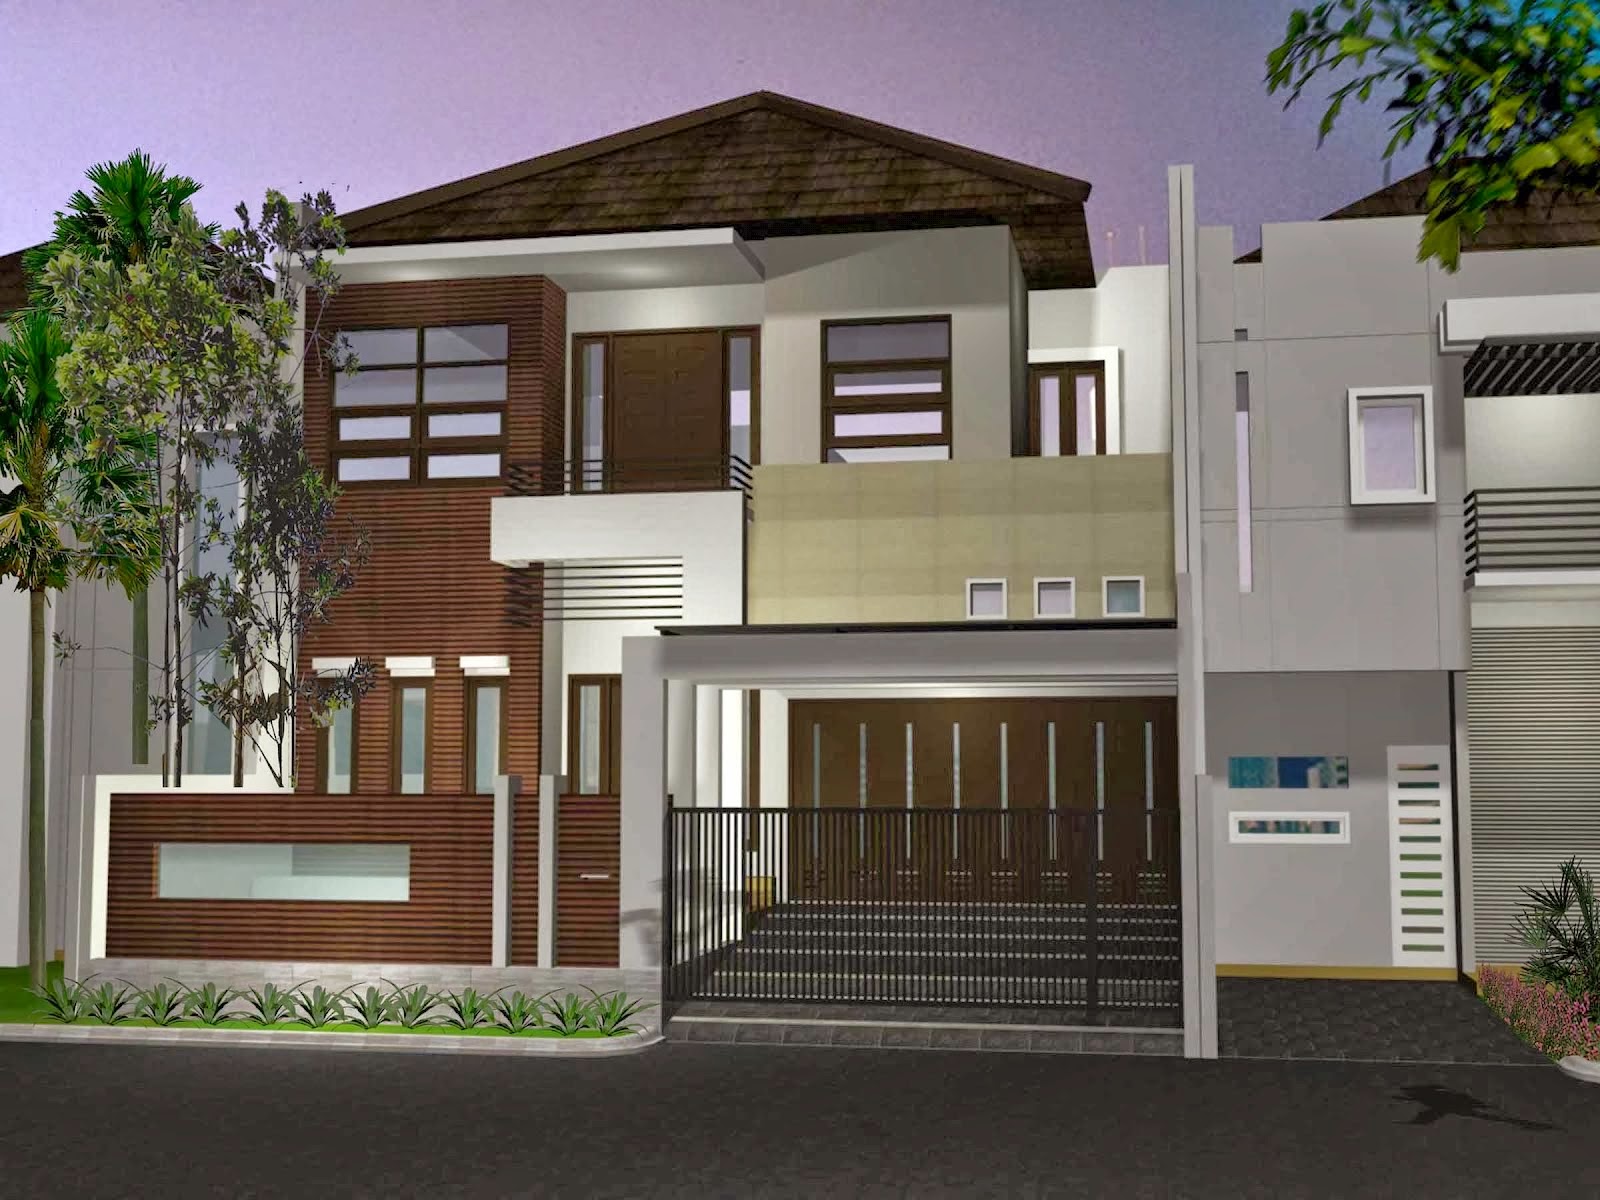 Desain Rumah Berlantai 2 Modern 2014 Desain Properti Indonesia